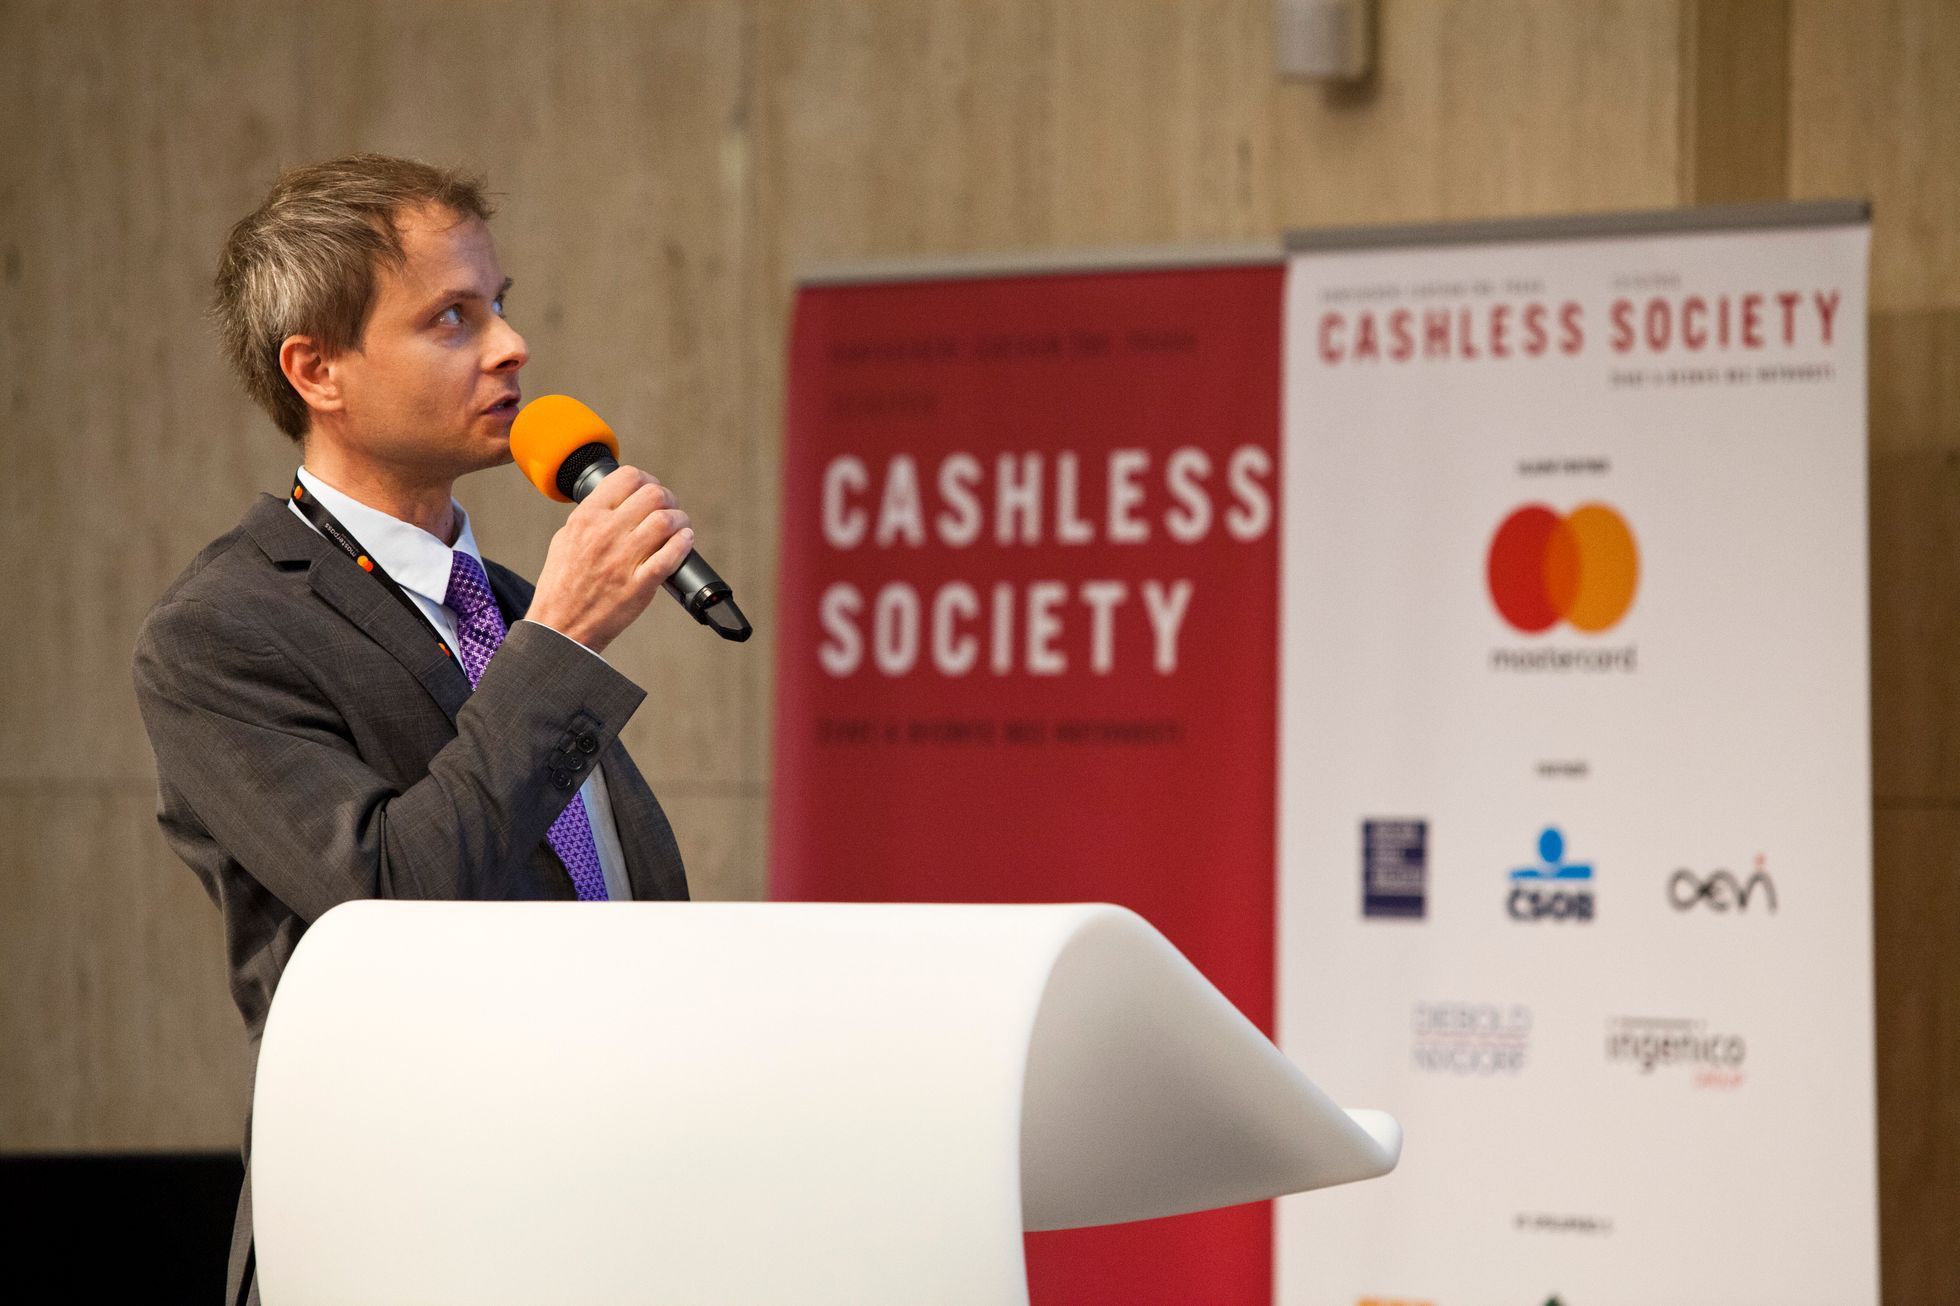 Konference Cashless Society